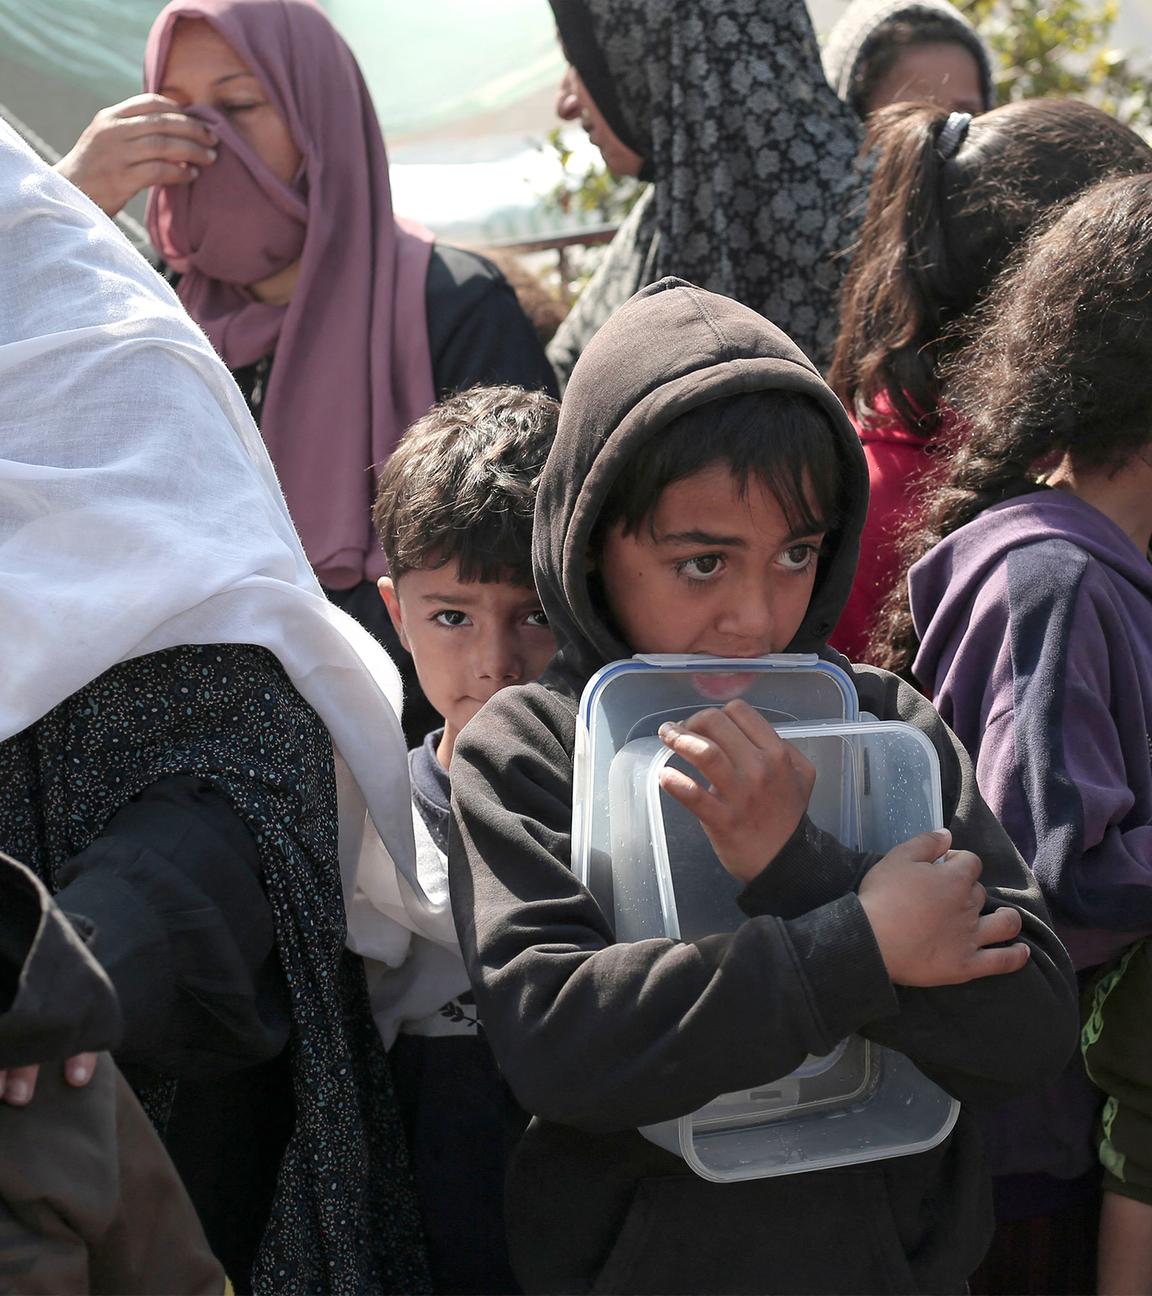 Palästinensische Flüchtlinge warten auf Lebensmittel